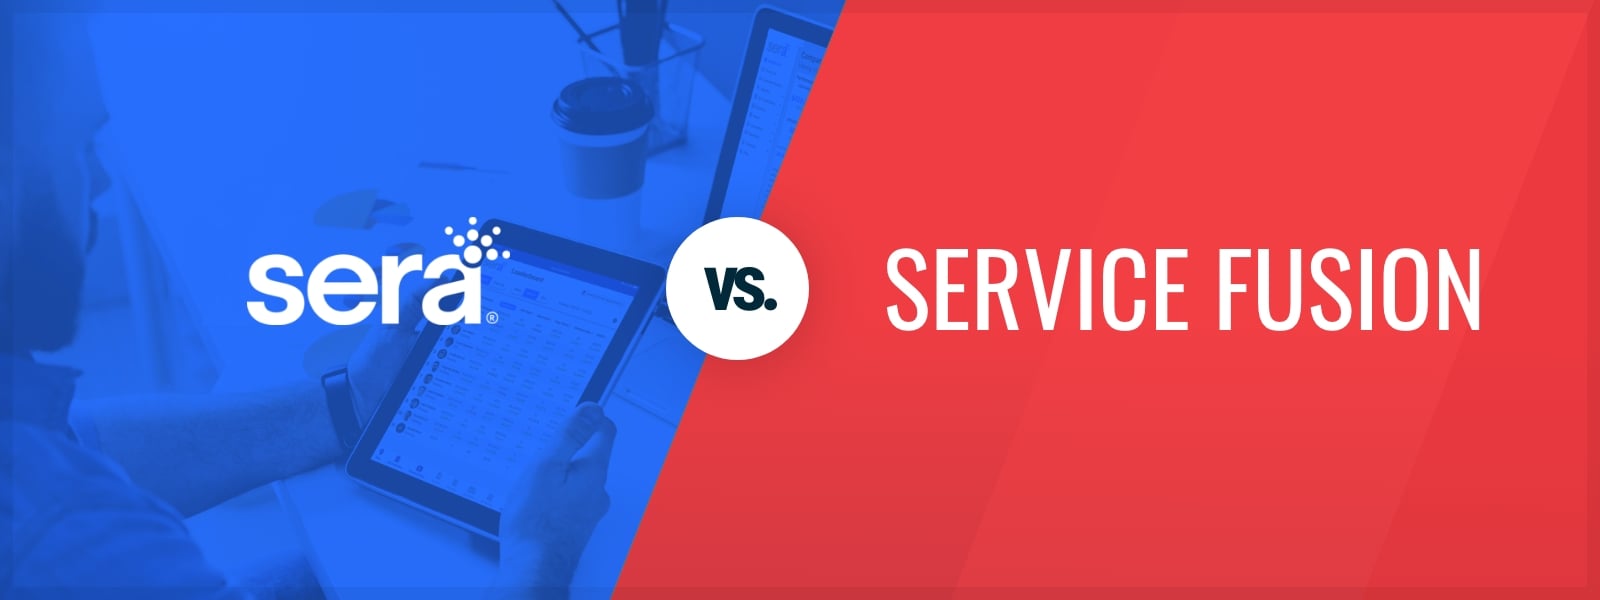 Sera vs. Service Fusion